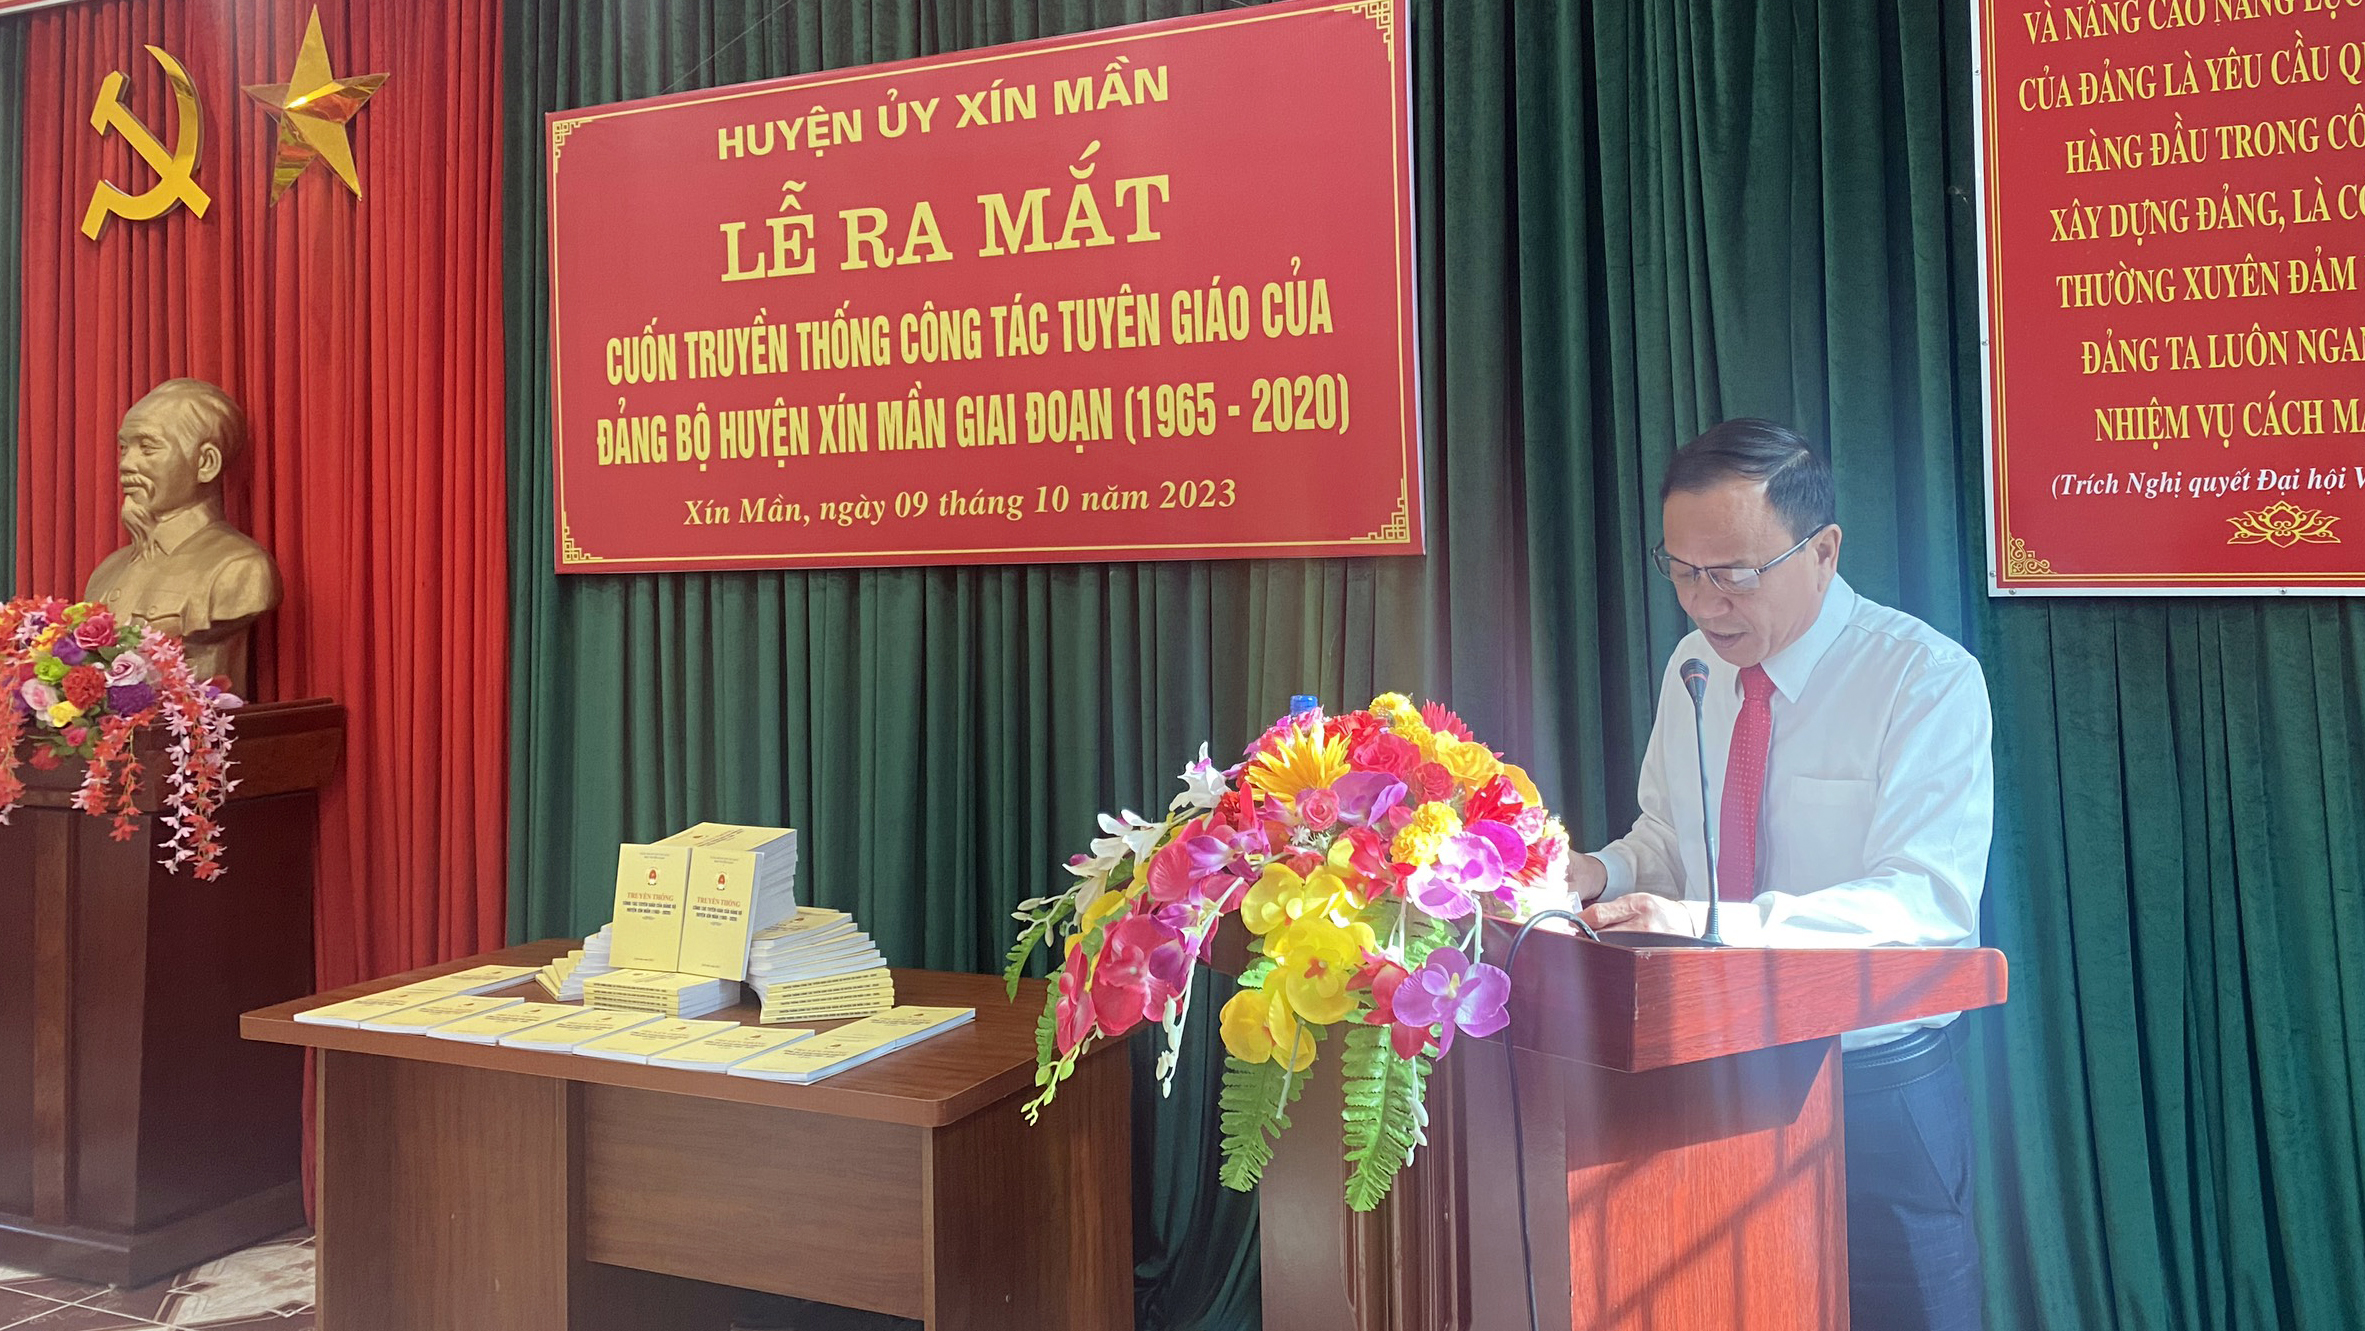 Lễ ra mắt Cuốn truyền thống Công tác Tuyên giáo của Đảng bộ huyện Xín Mần (giai đoạn 1965-2020)